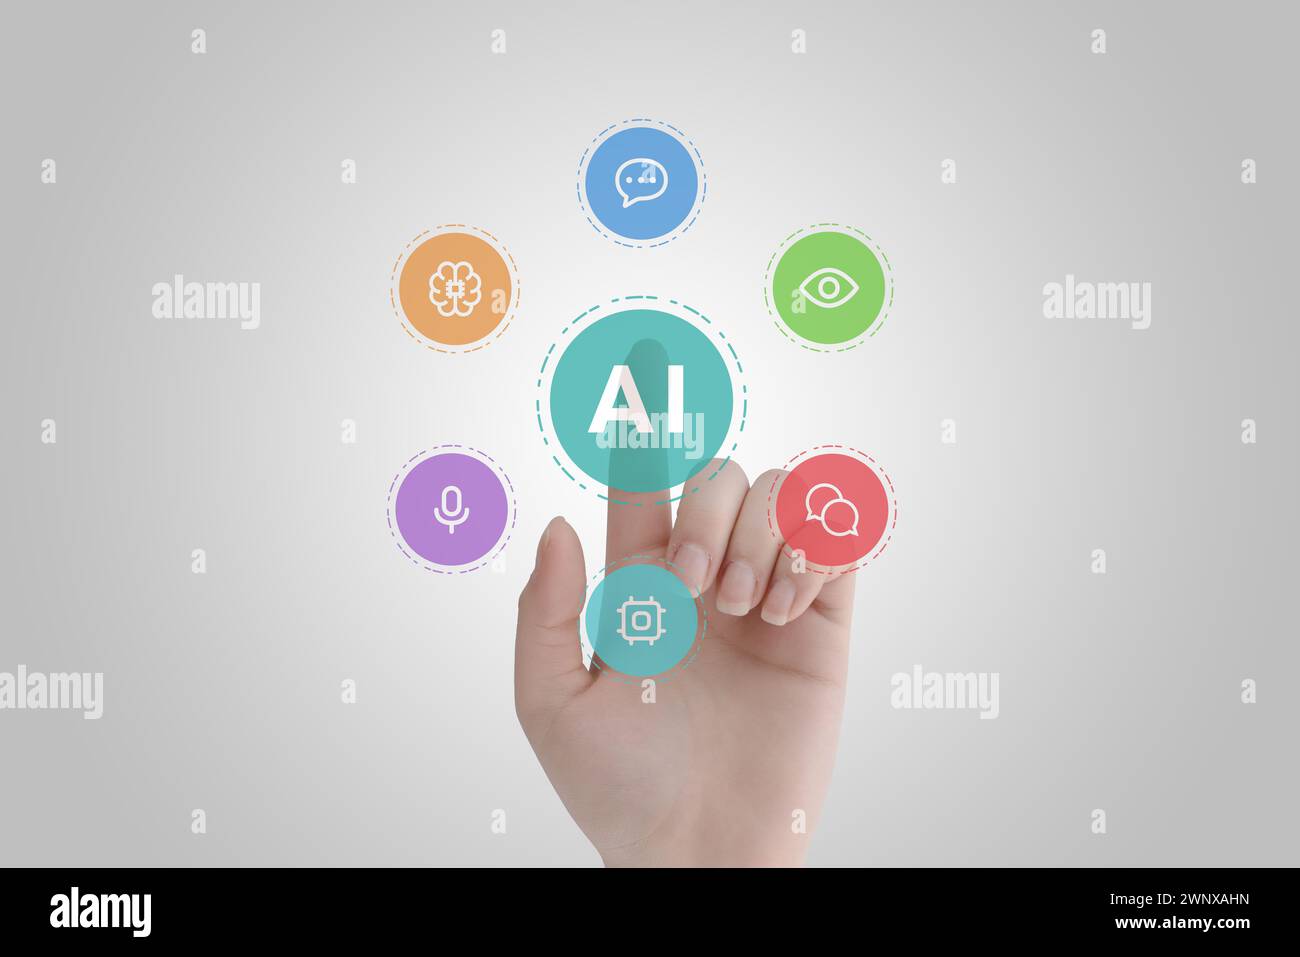 Tocchi le icone dell'IA che levitano:. Concetto di sviluppo della tecnologia di intelligenza artificiale con un tocco umano. Le icone rappresentano l'elaborazione del linguaggio, la visione e il livello della macchina Foto Stock